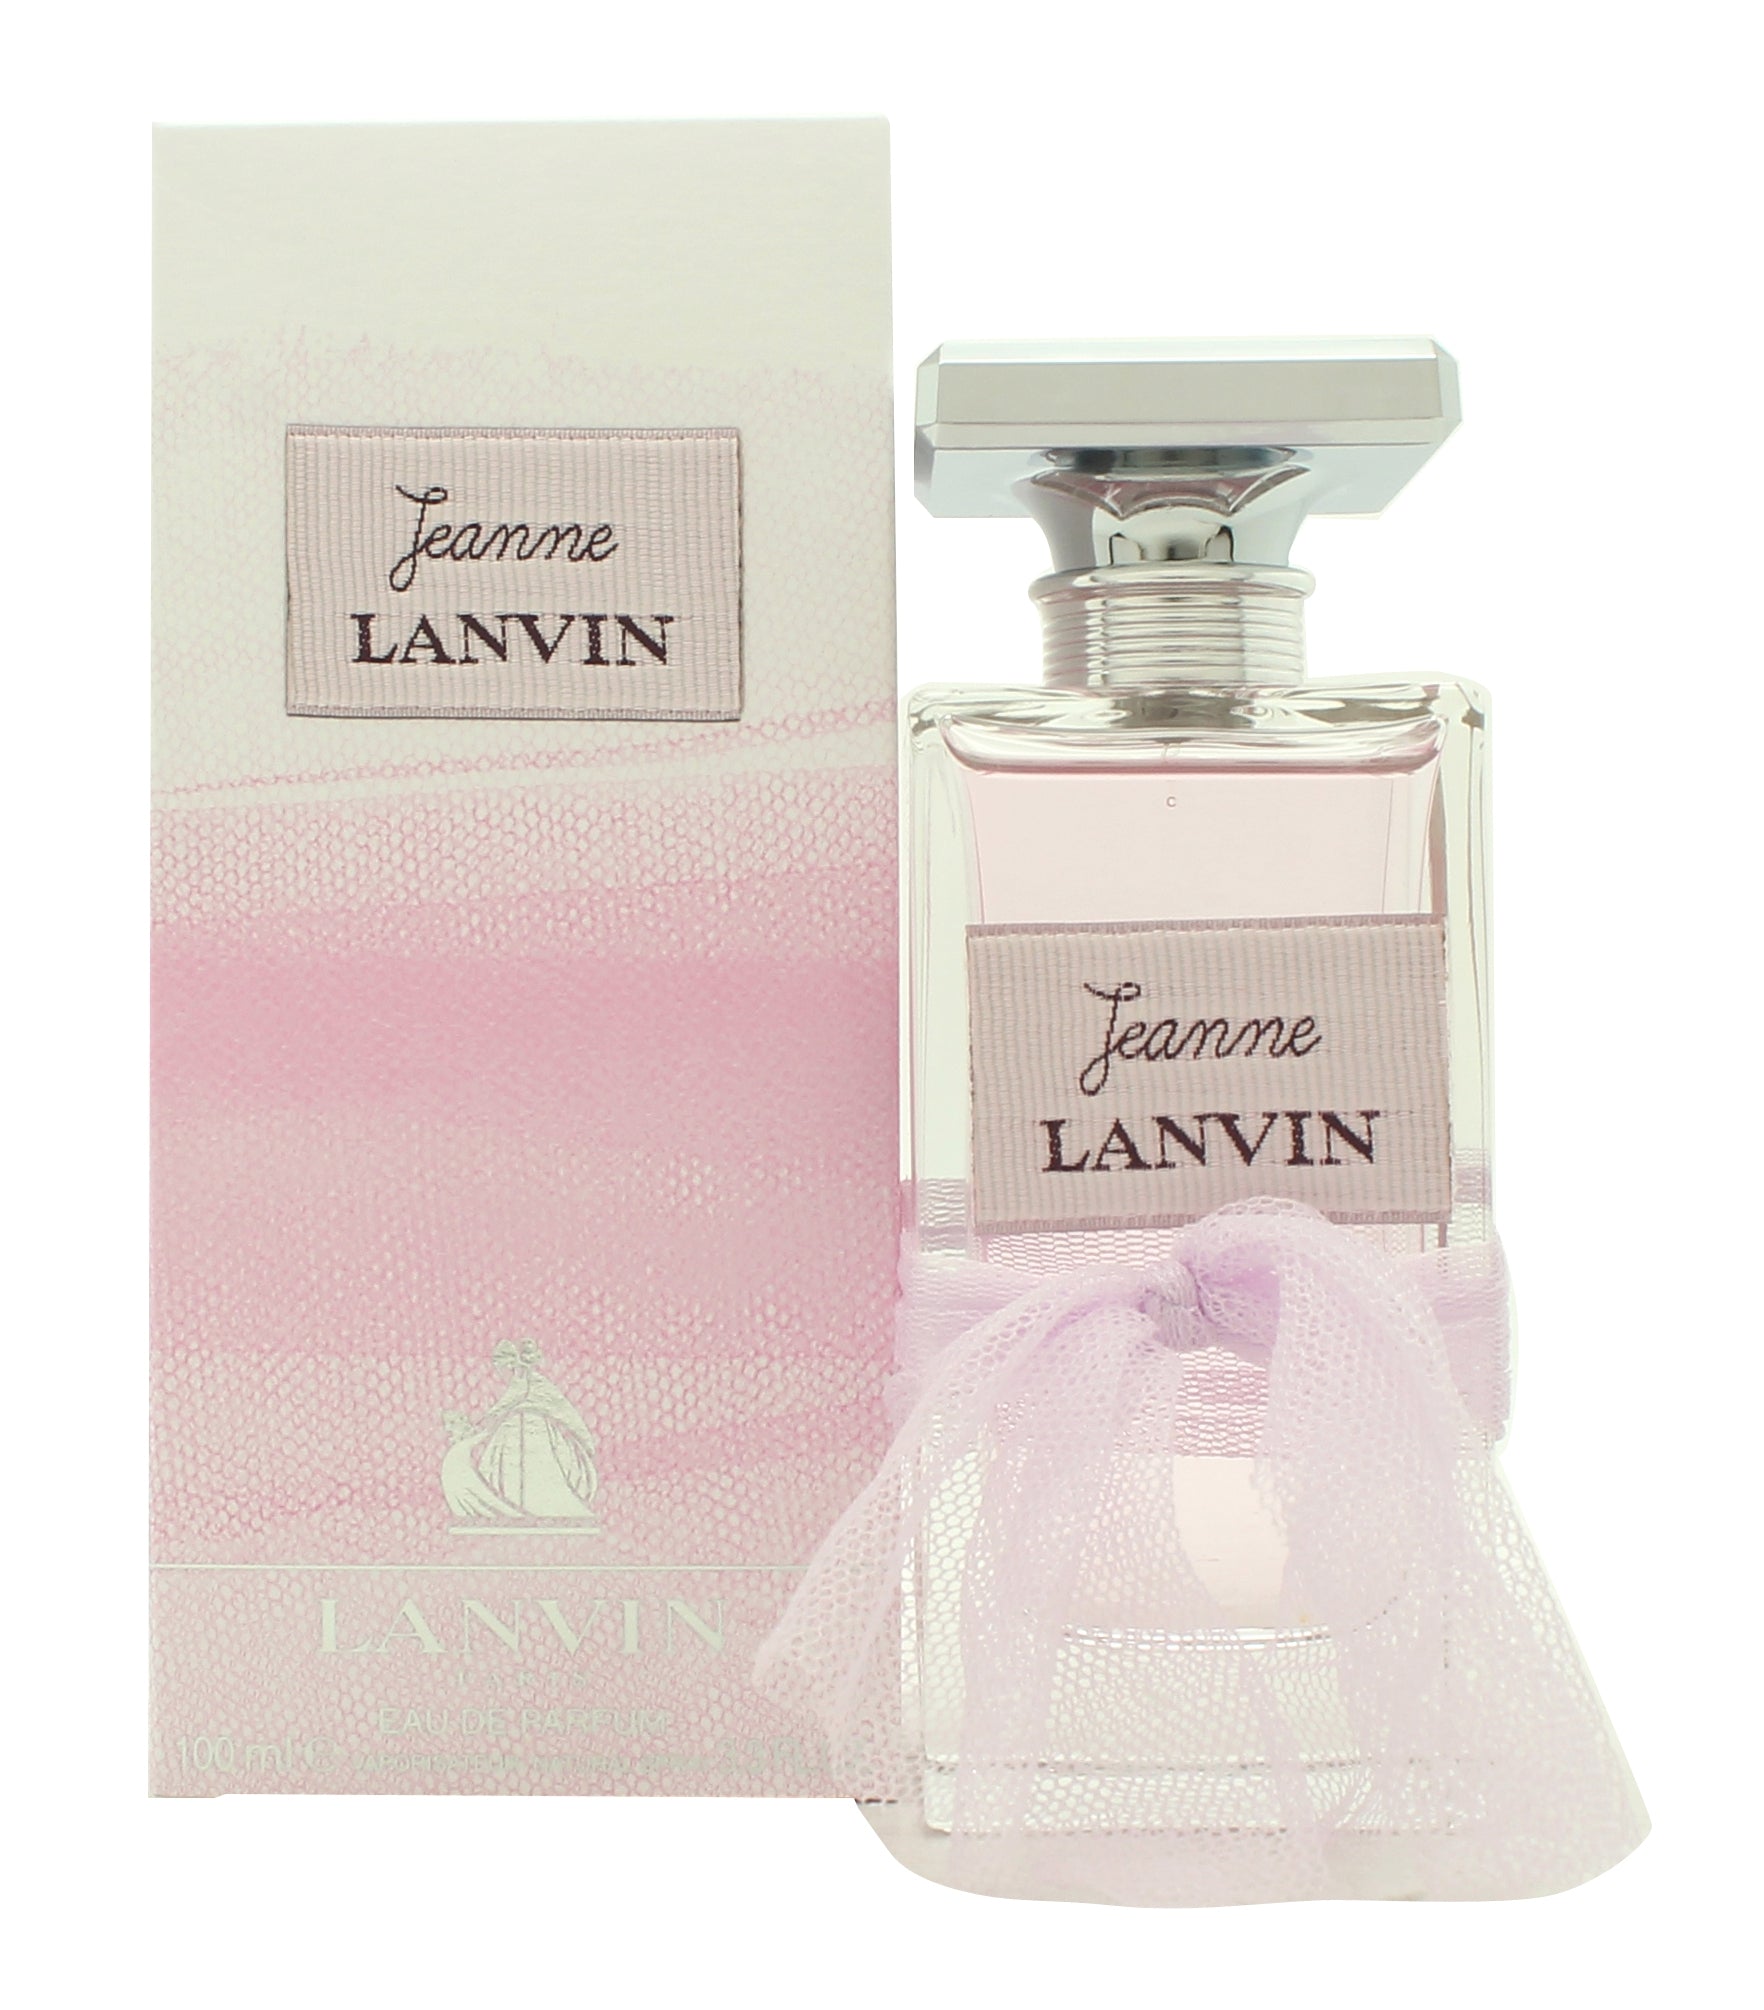 View Lanvin Jeanne Eau de Parfum 100ml Spray information